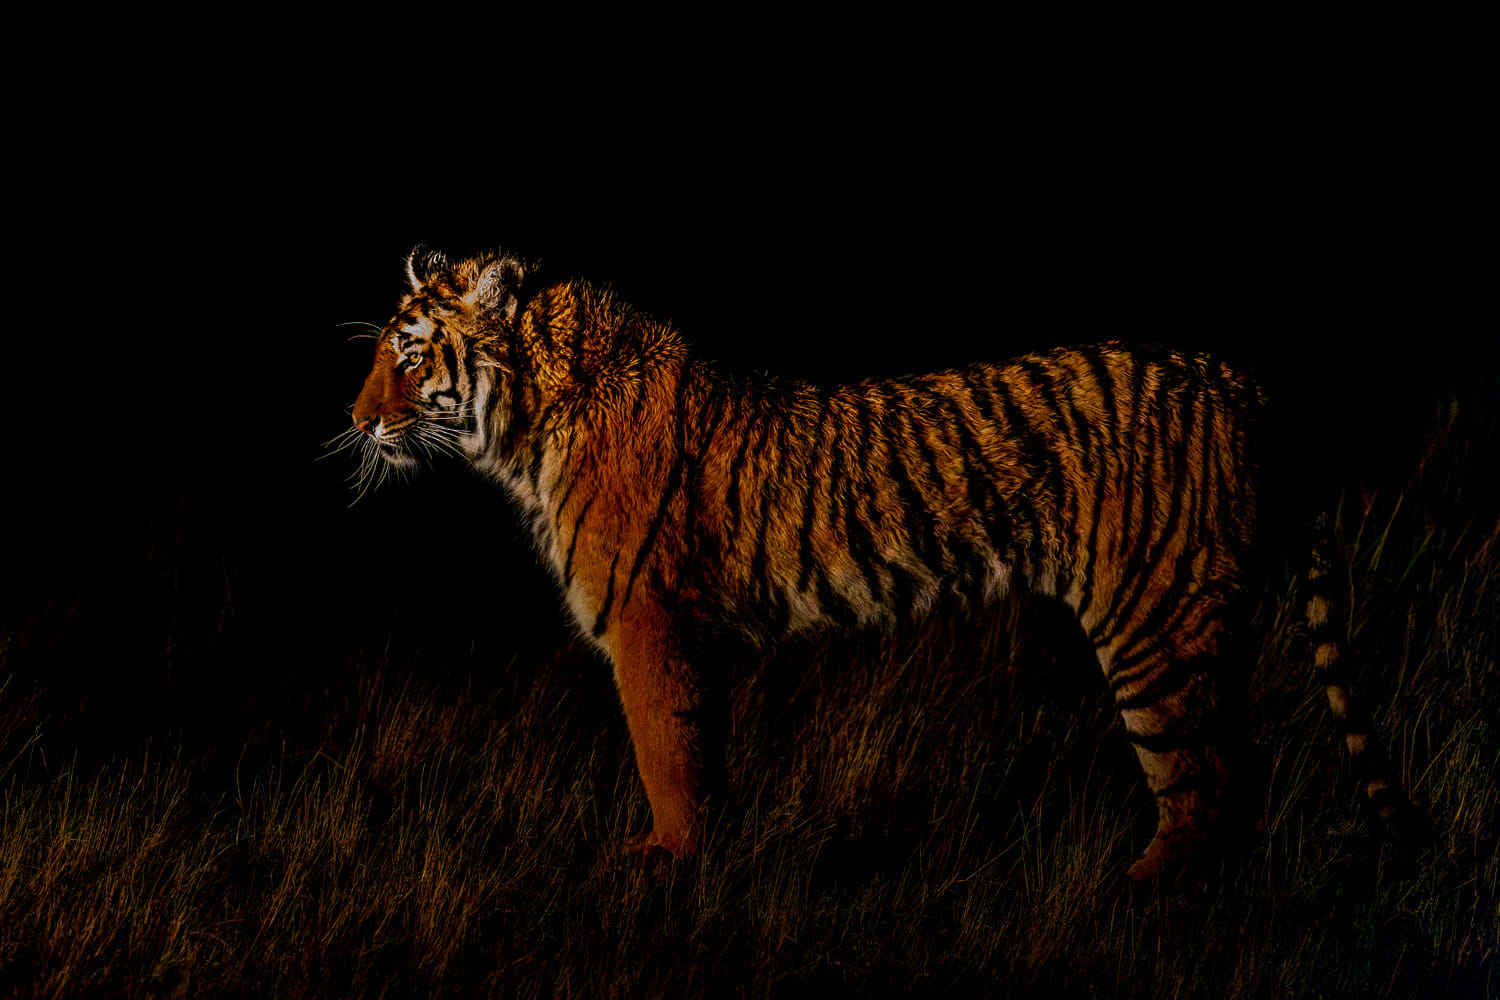 Wir fahren durch das große Reservat, wo die Tiger leben und suchen die größten Raubkatzen der Welt, um sie zu fotografieren.